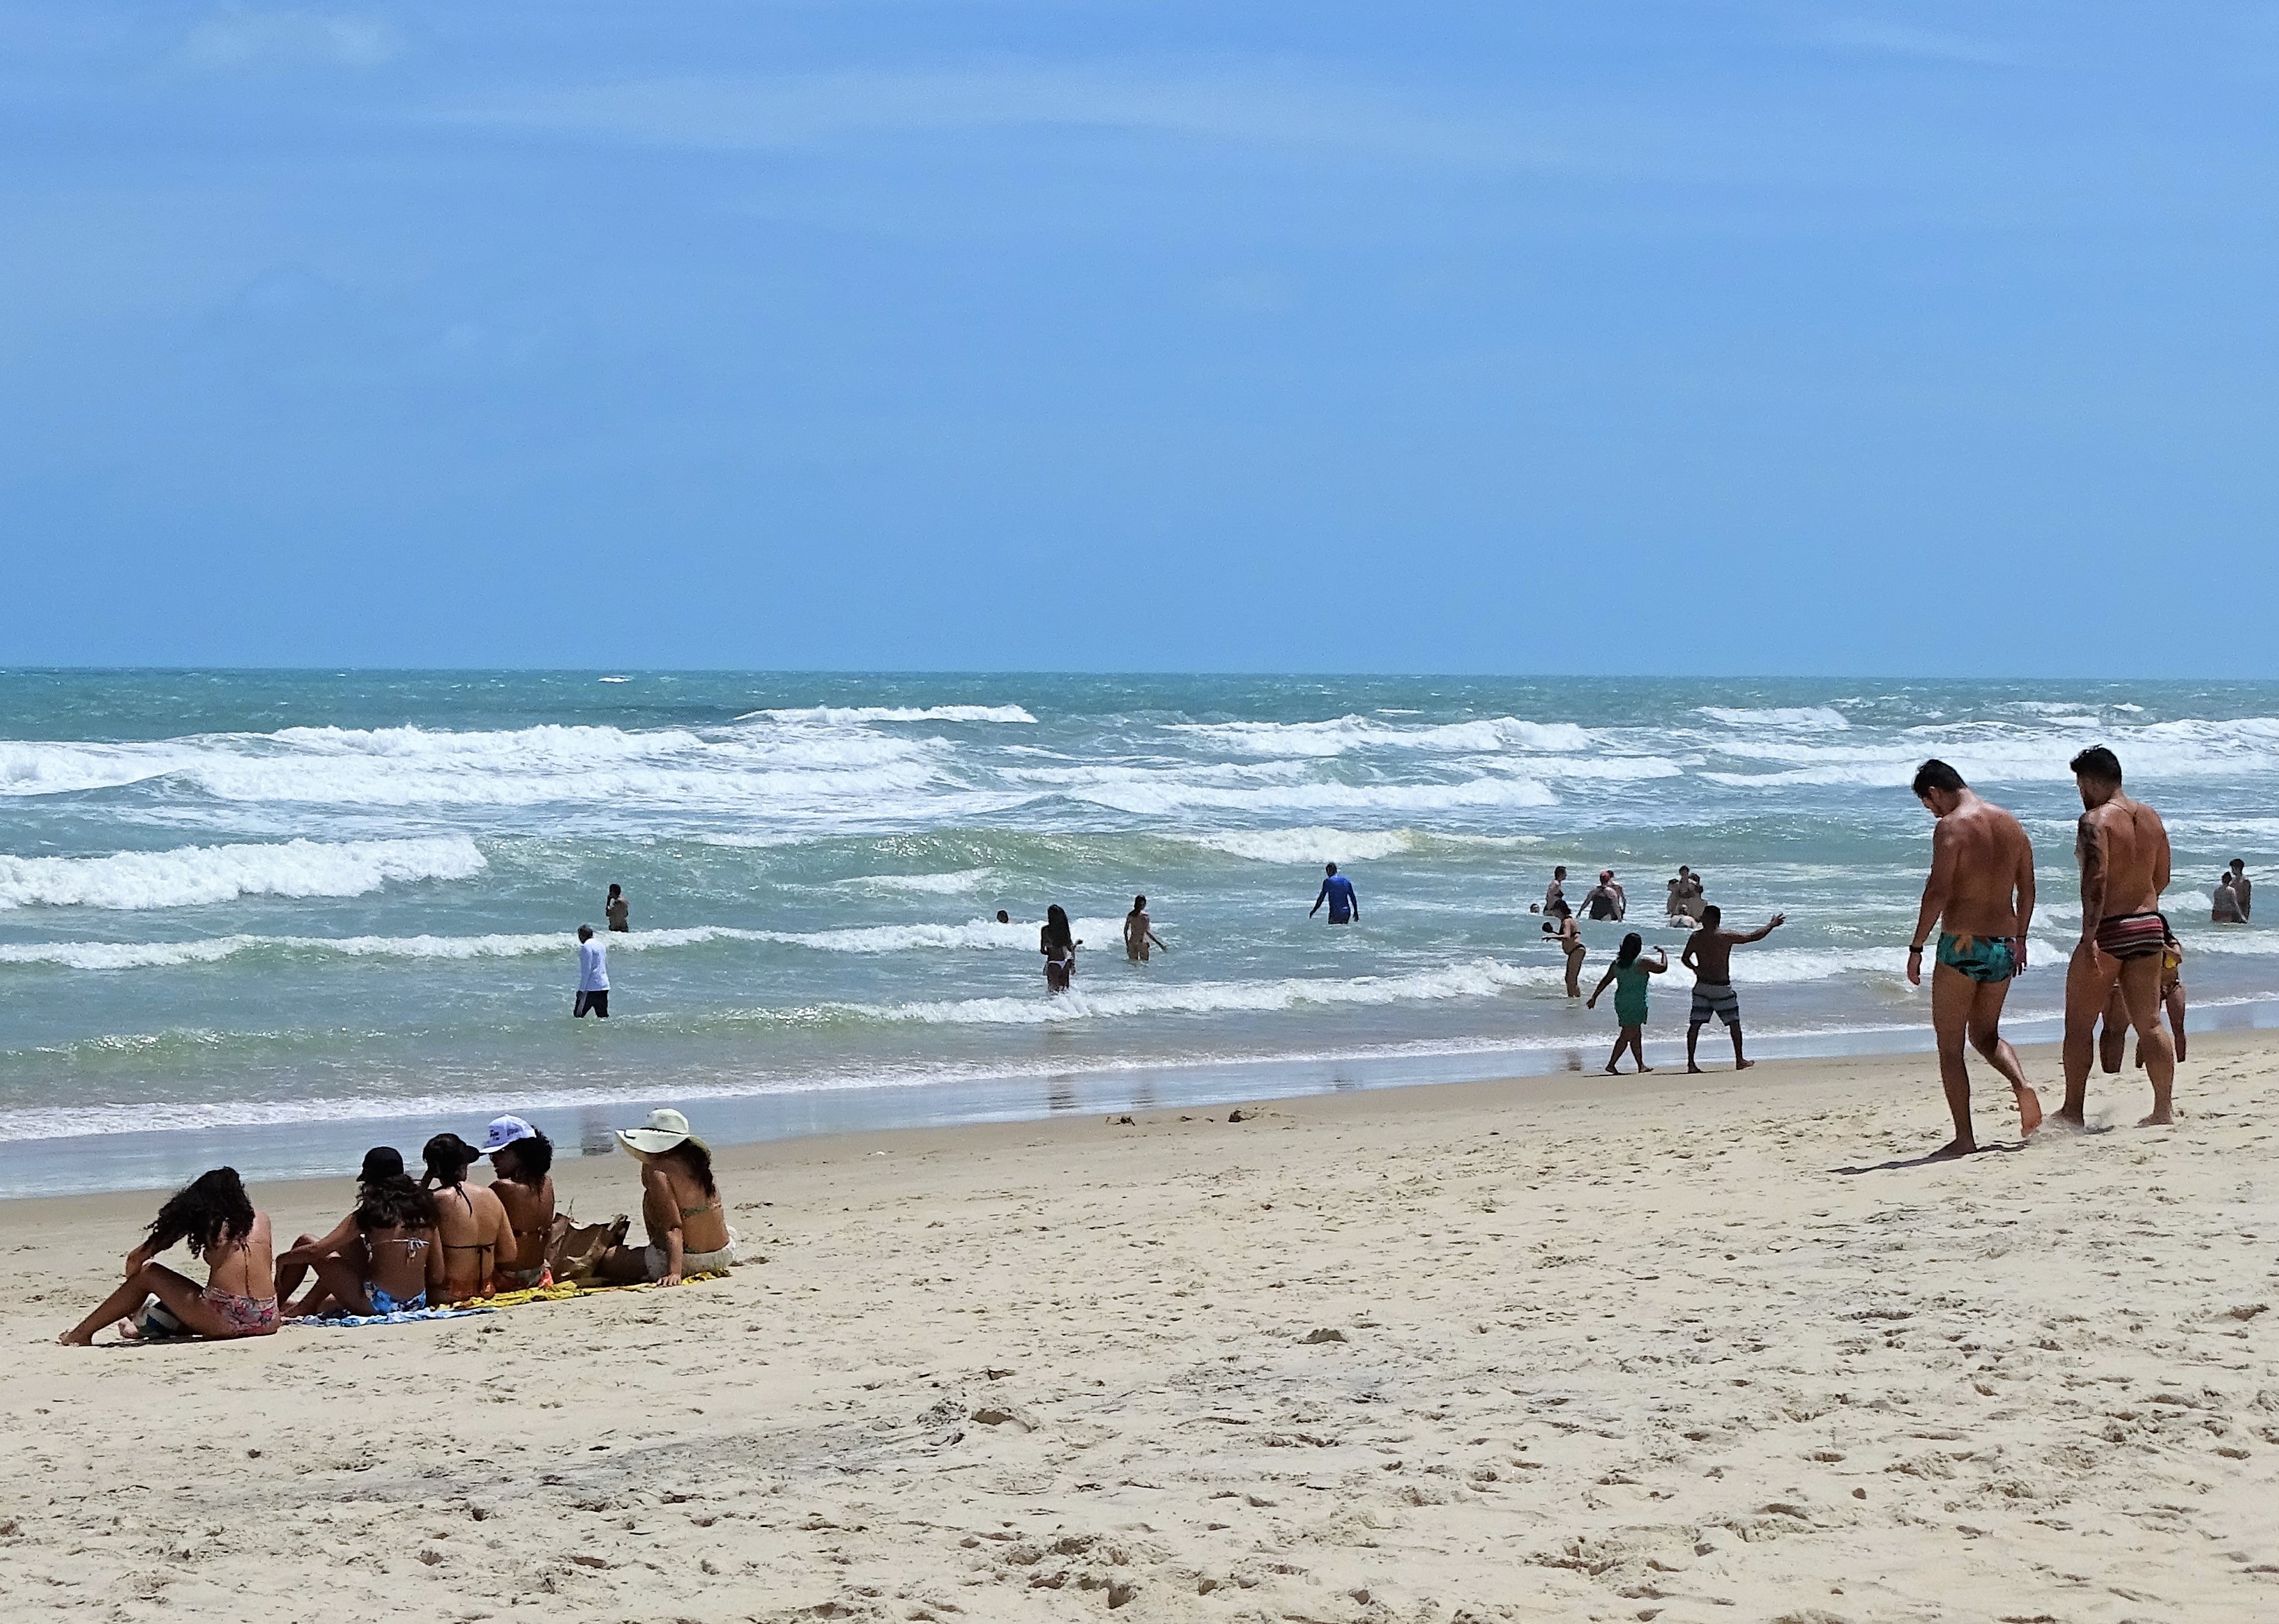 23 trechos estão próprios para banho neste fim de semana em Fortaleza -  Governo do Estado do Ceará